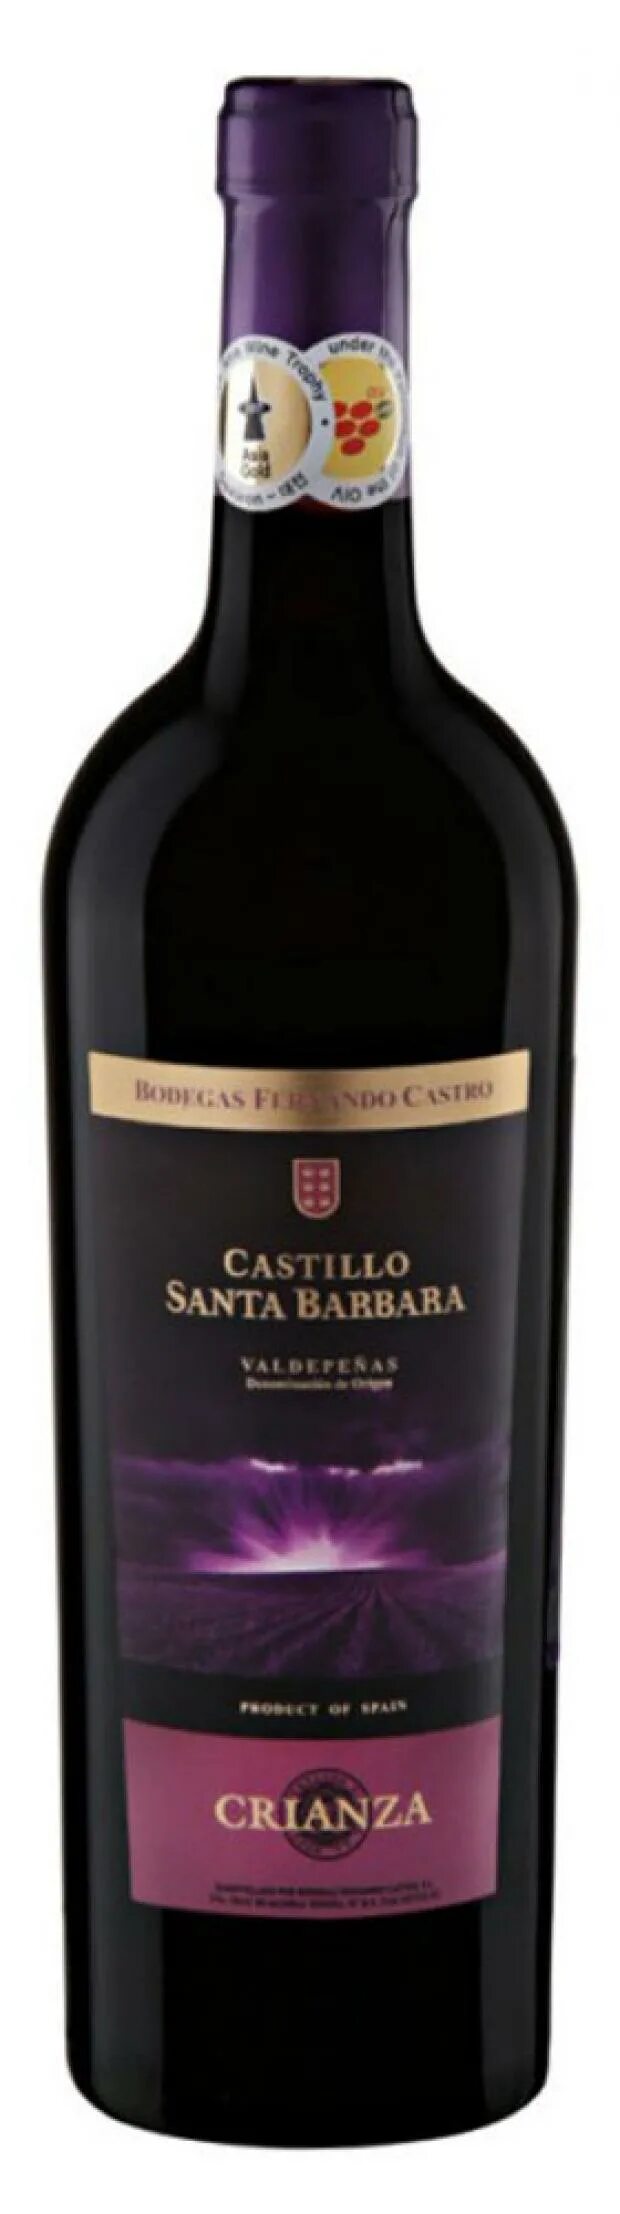 Санта барбара шампанское. Вино красное сухое Санта Барбара. Кастильо Санта Барбара Крианса. Вино Кастильо Санта Барбара красное сухое. Вино Кастильо Санта Барбара, Крианса, красное, сухое (Испания), 0,75л.